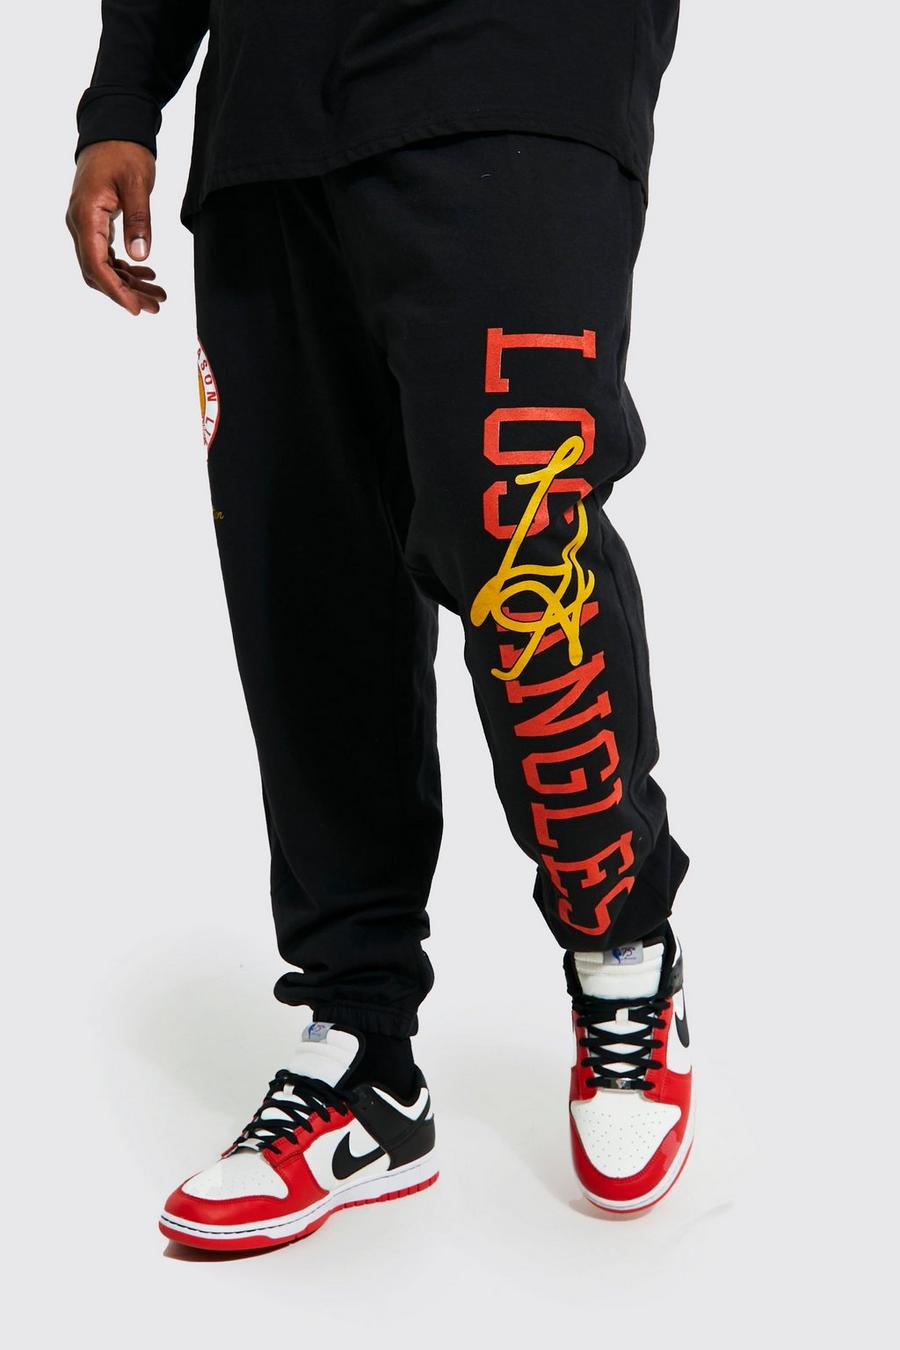 Pantalón deportivo Plus con estampado gráfico universitario de Los Angeles, Black negro